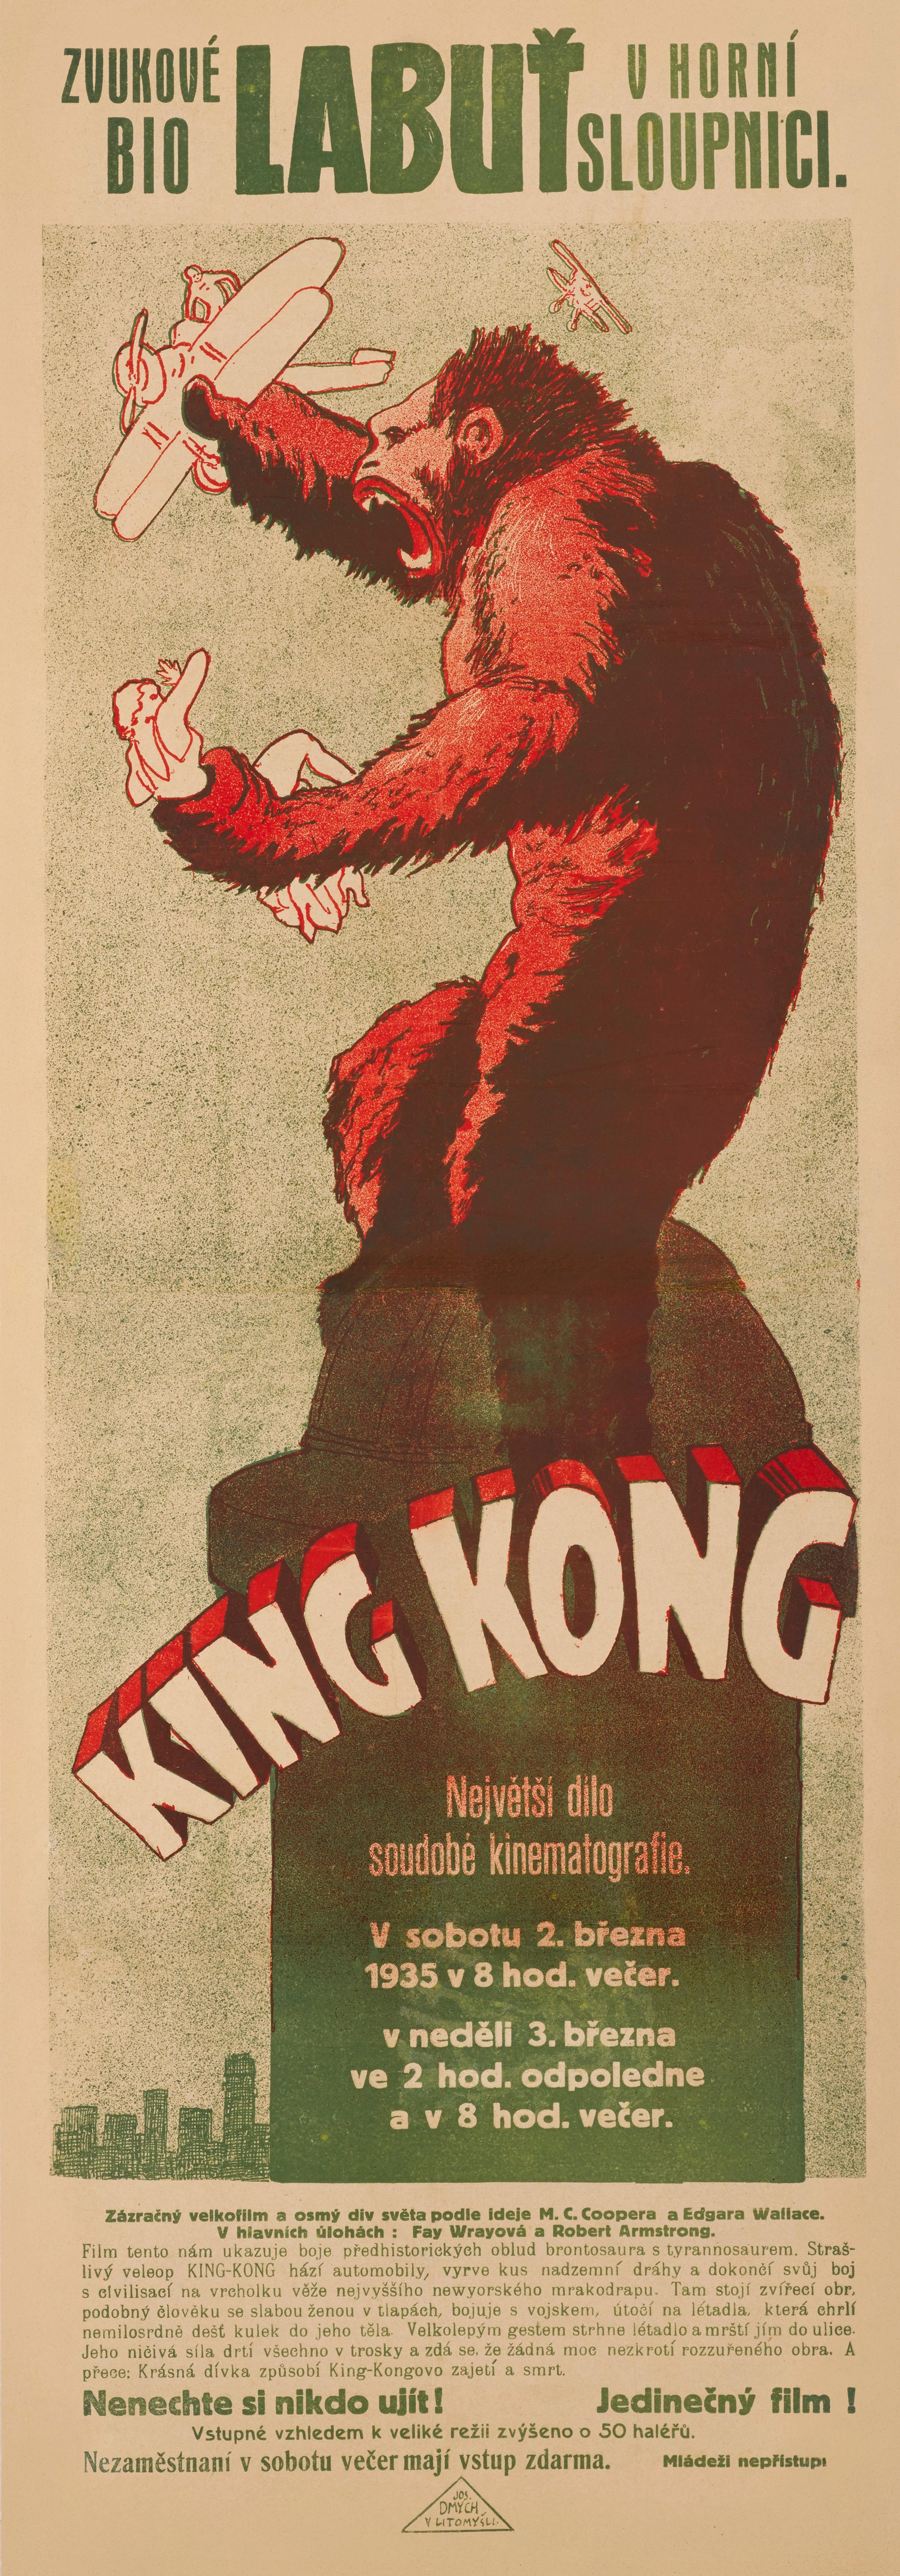 Czech King Kong